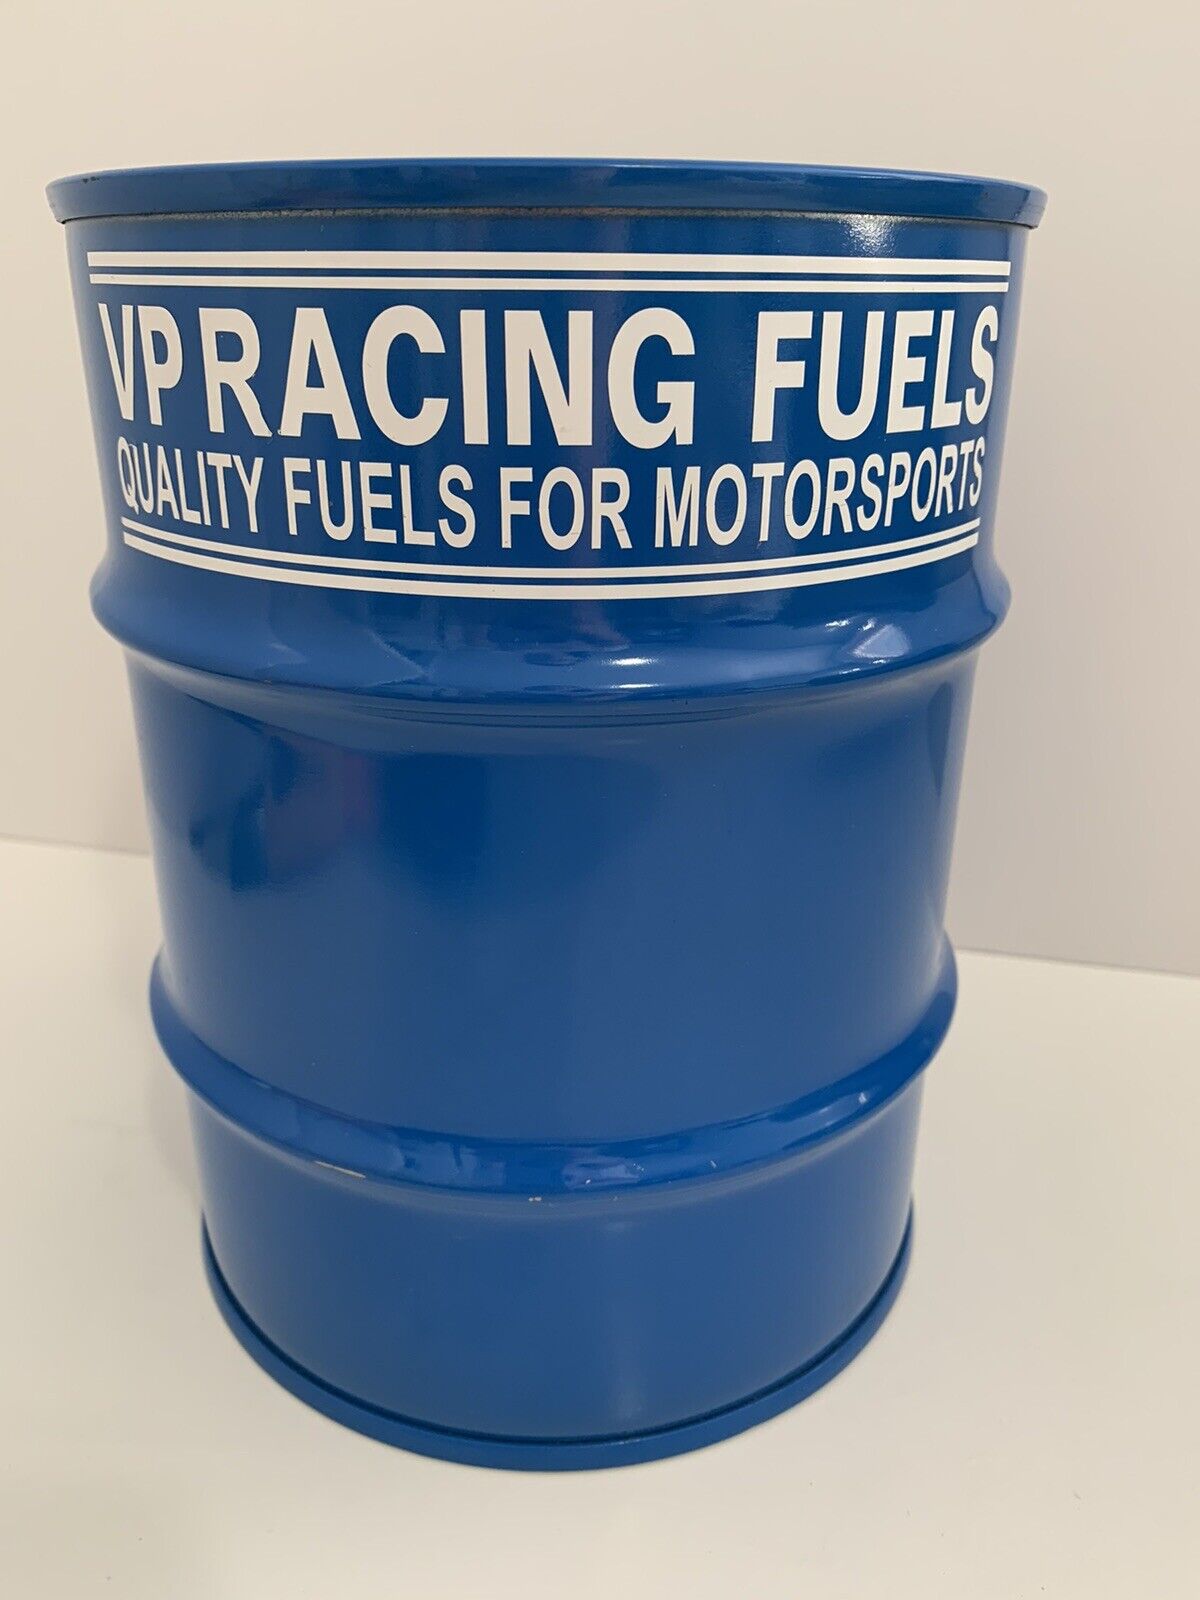 VP Racing Fuels For Motorsports Barrel Piggy Bank Decor - Read